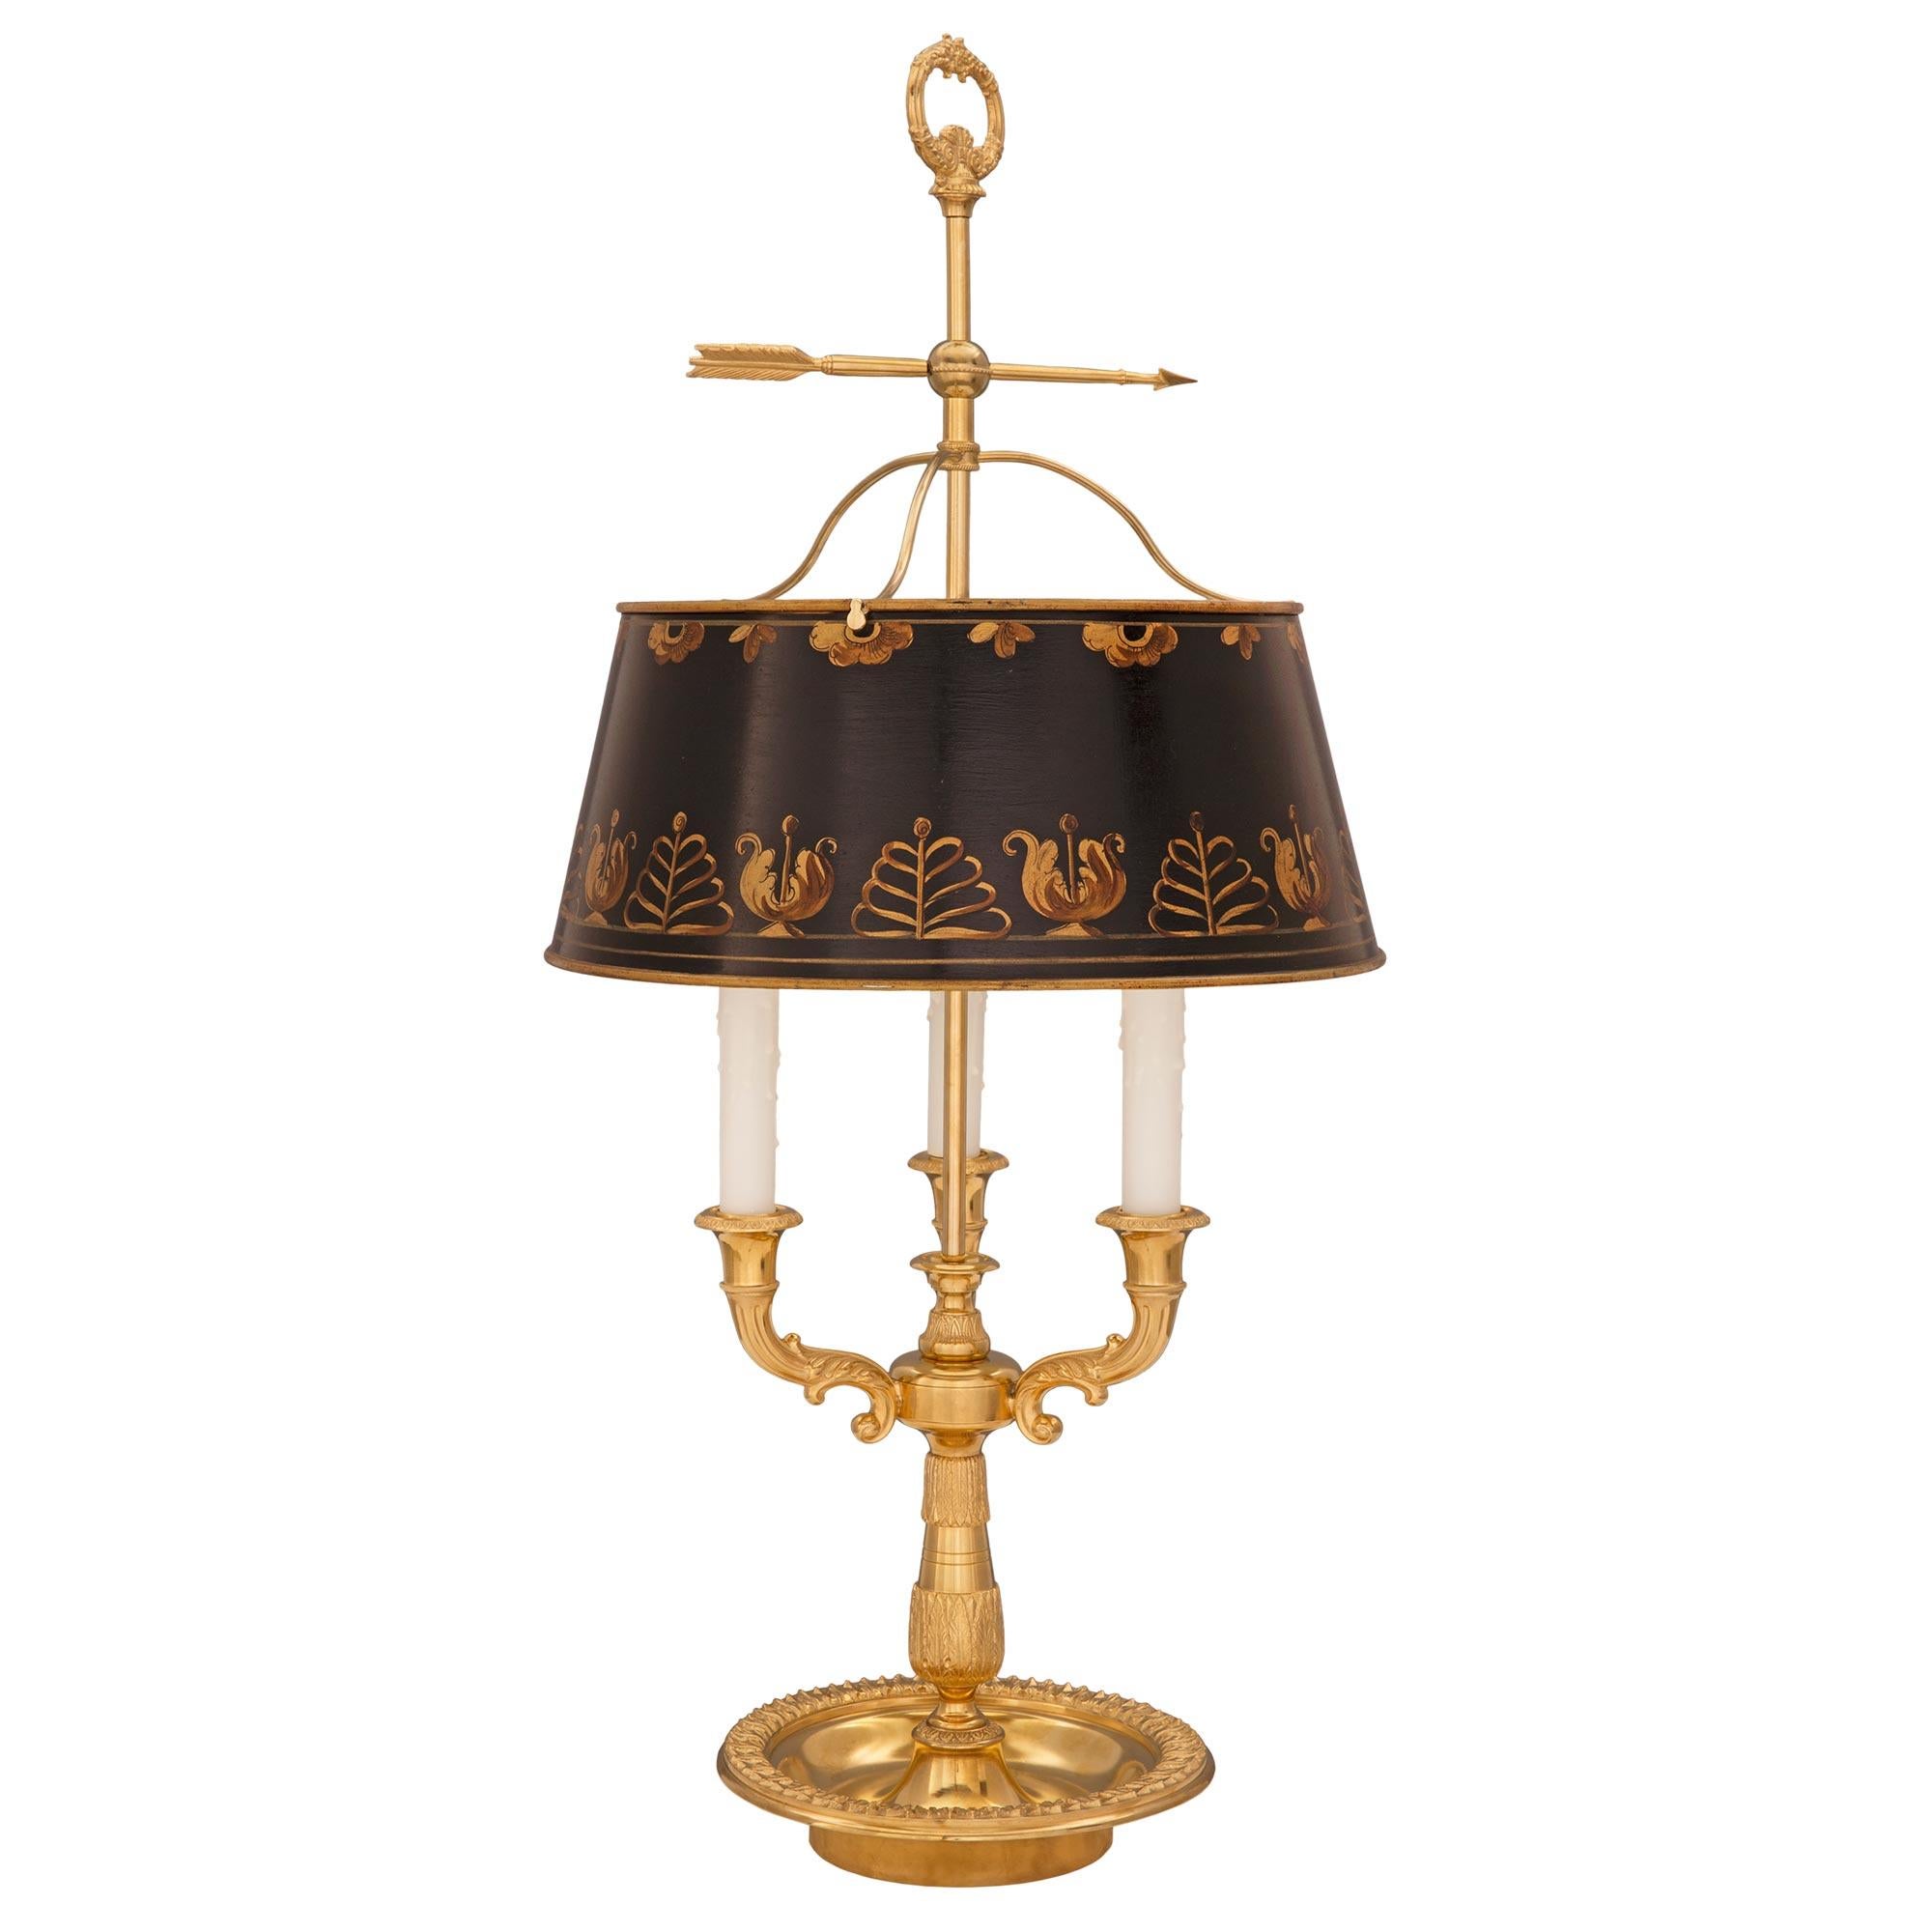 Eine elegante französische Bouillotte-Lampe aus dem 19. Jahrhundert aus Louis XVI-Ormolu und Zinn. Die charmante Lampe steht auf einem kreisrunden, schalenförmigen Sockel mit einem schönen, umlaufenden Blattwerkband. Die kreisförmige zentrale Stütze